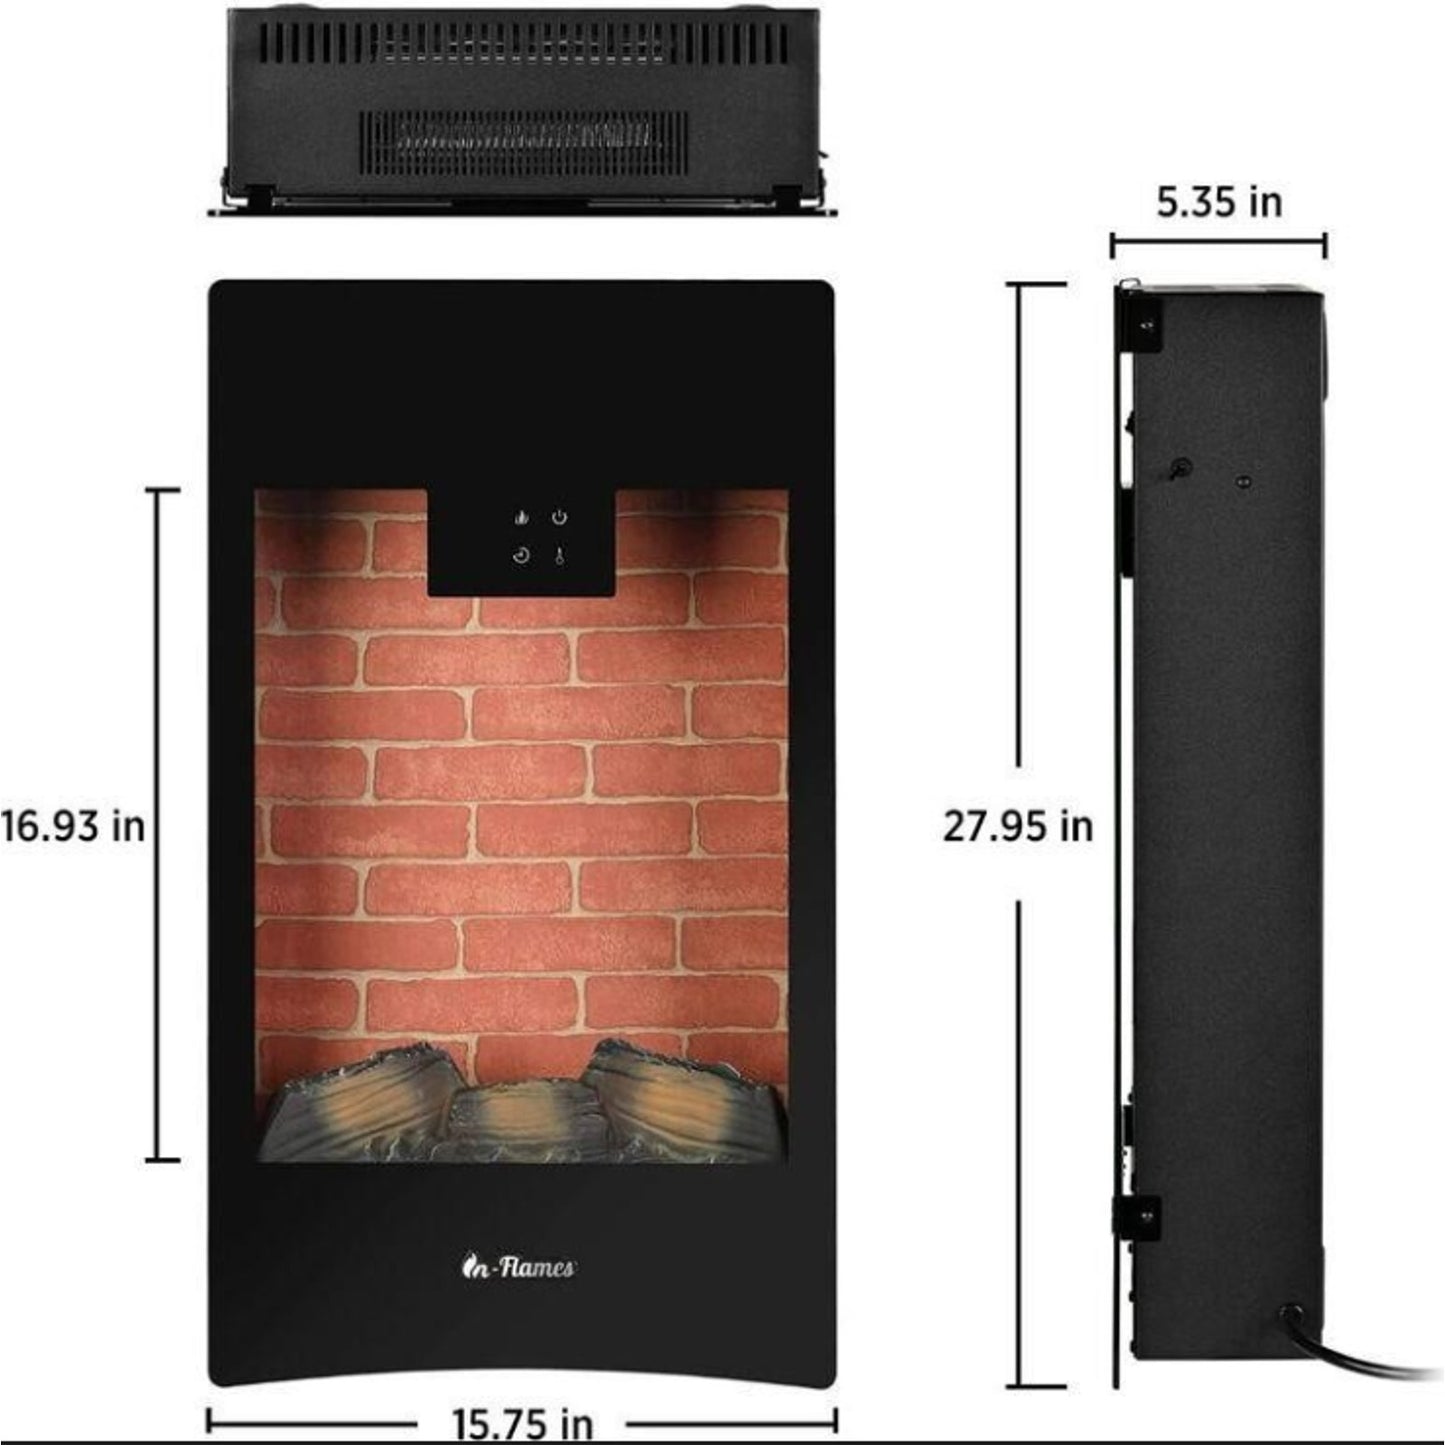 Turbro INF28-WU Electric Fireplace Heater